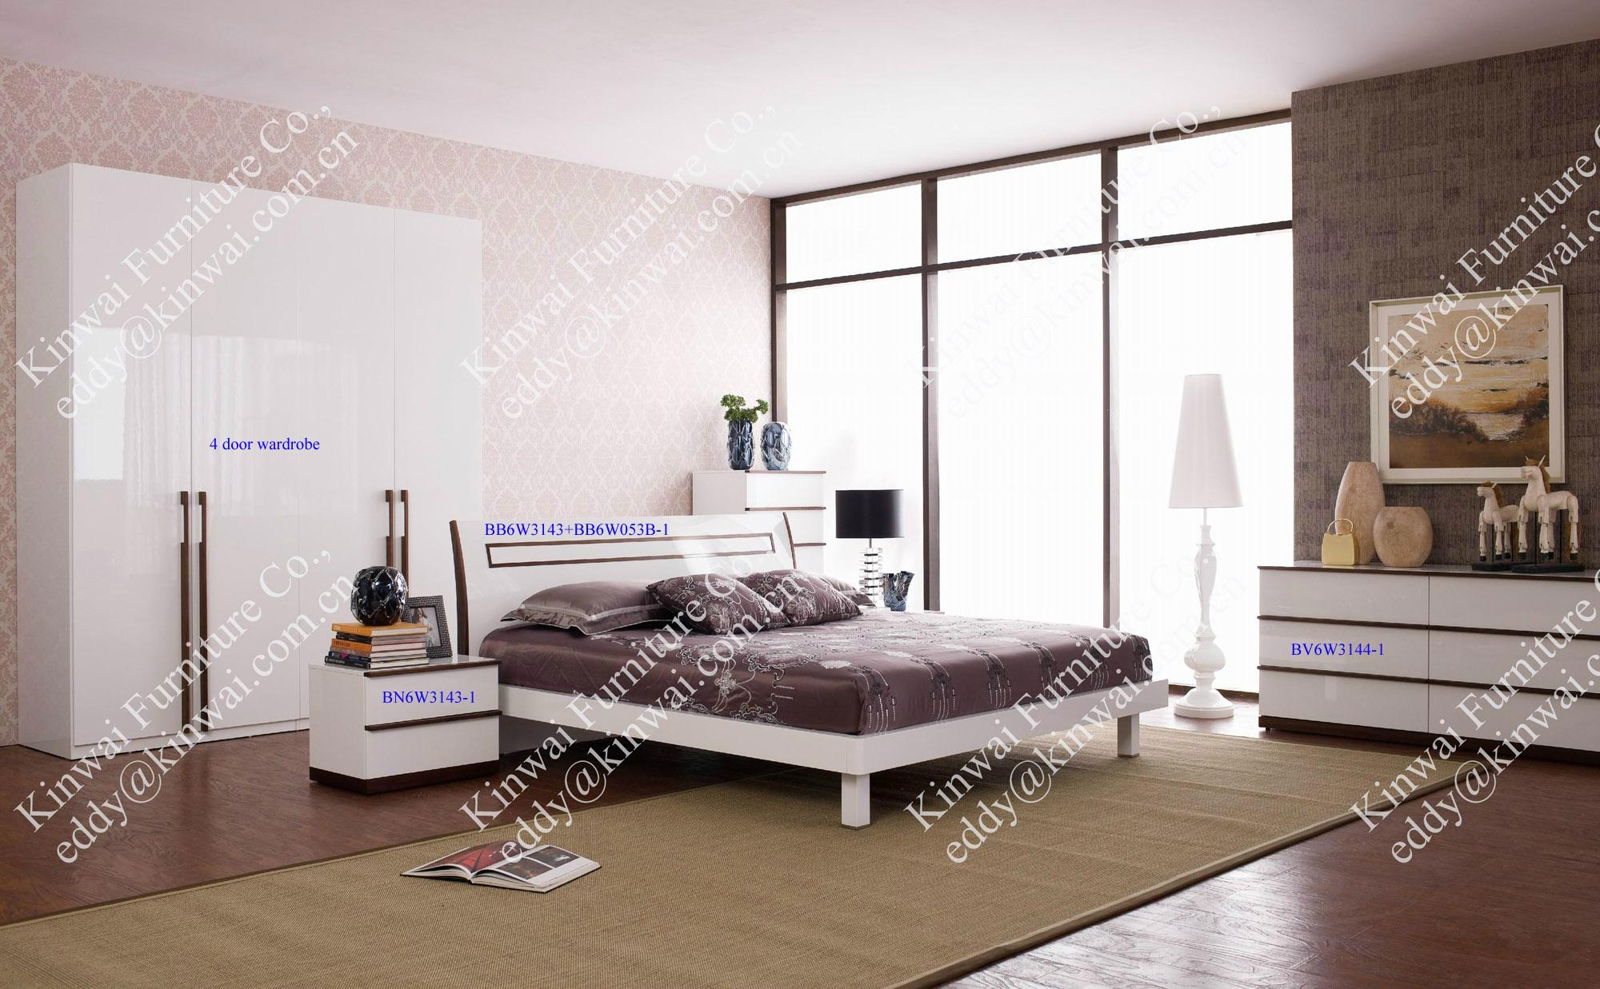 Berne bedroom furniture bed bedside table high chest double dresser